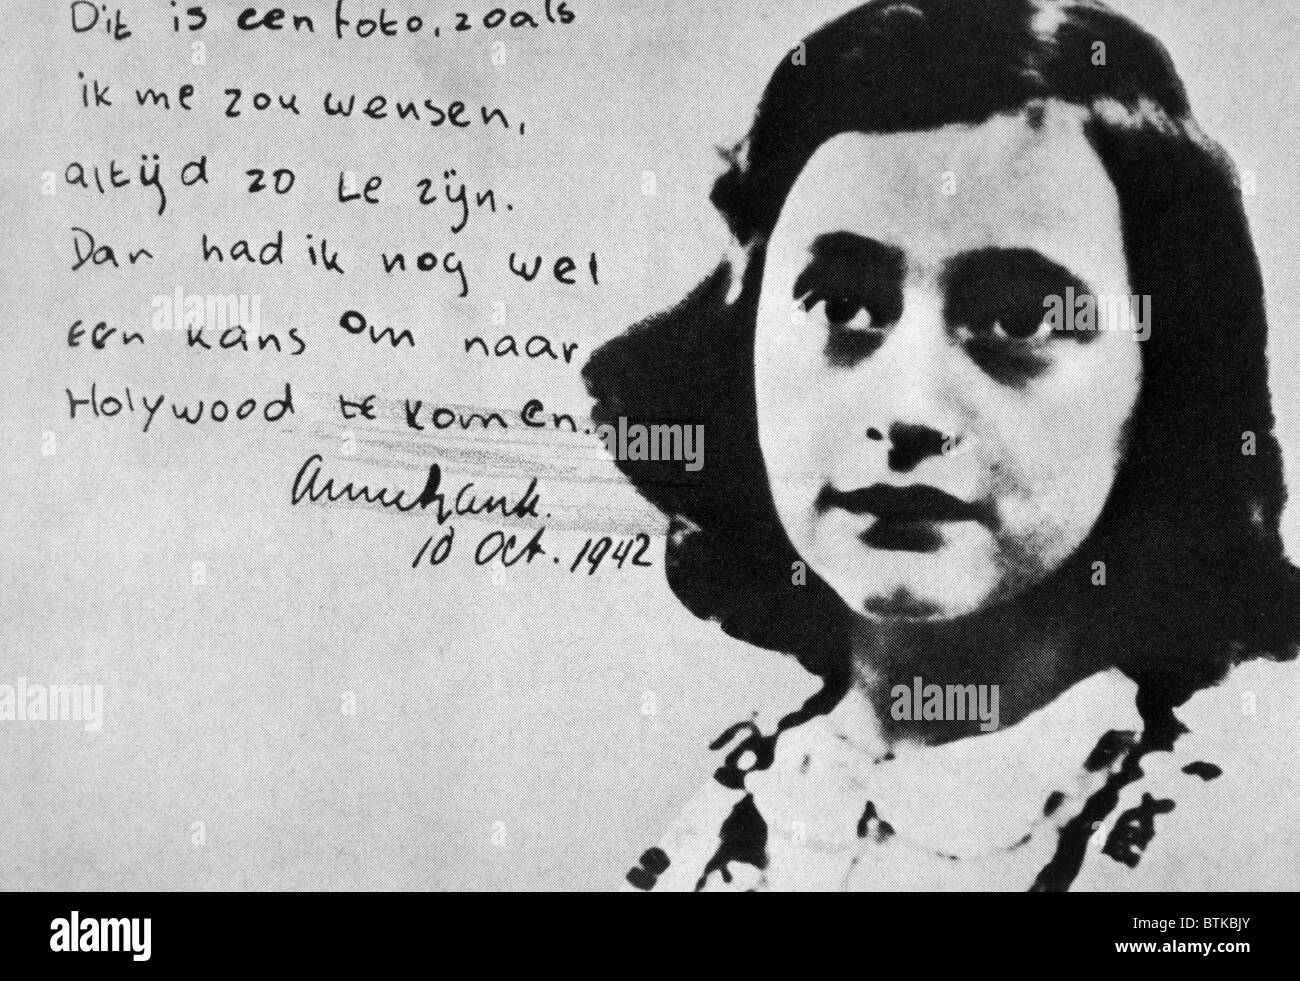 Anne Frank, photographie inscrit avec son souhait d'aller à Hollywood, le 10 octobre 1942 Banque D'Images